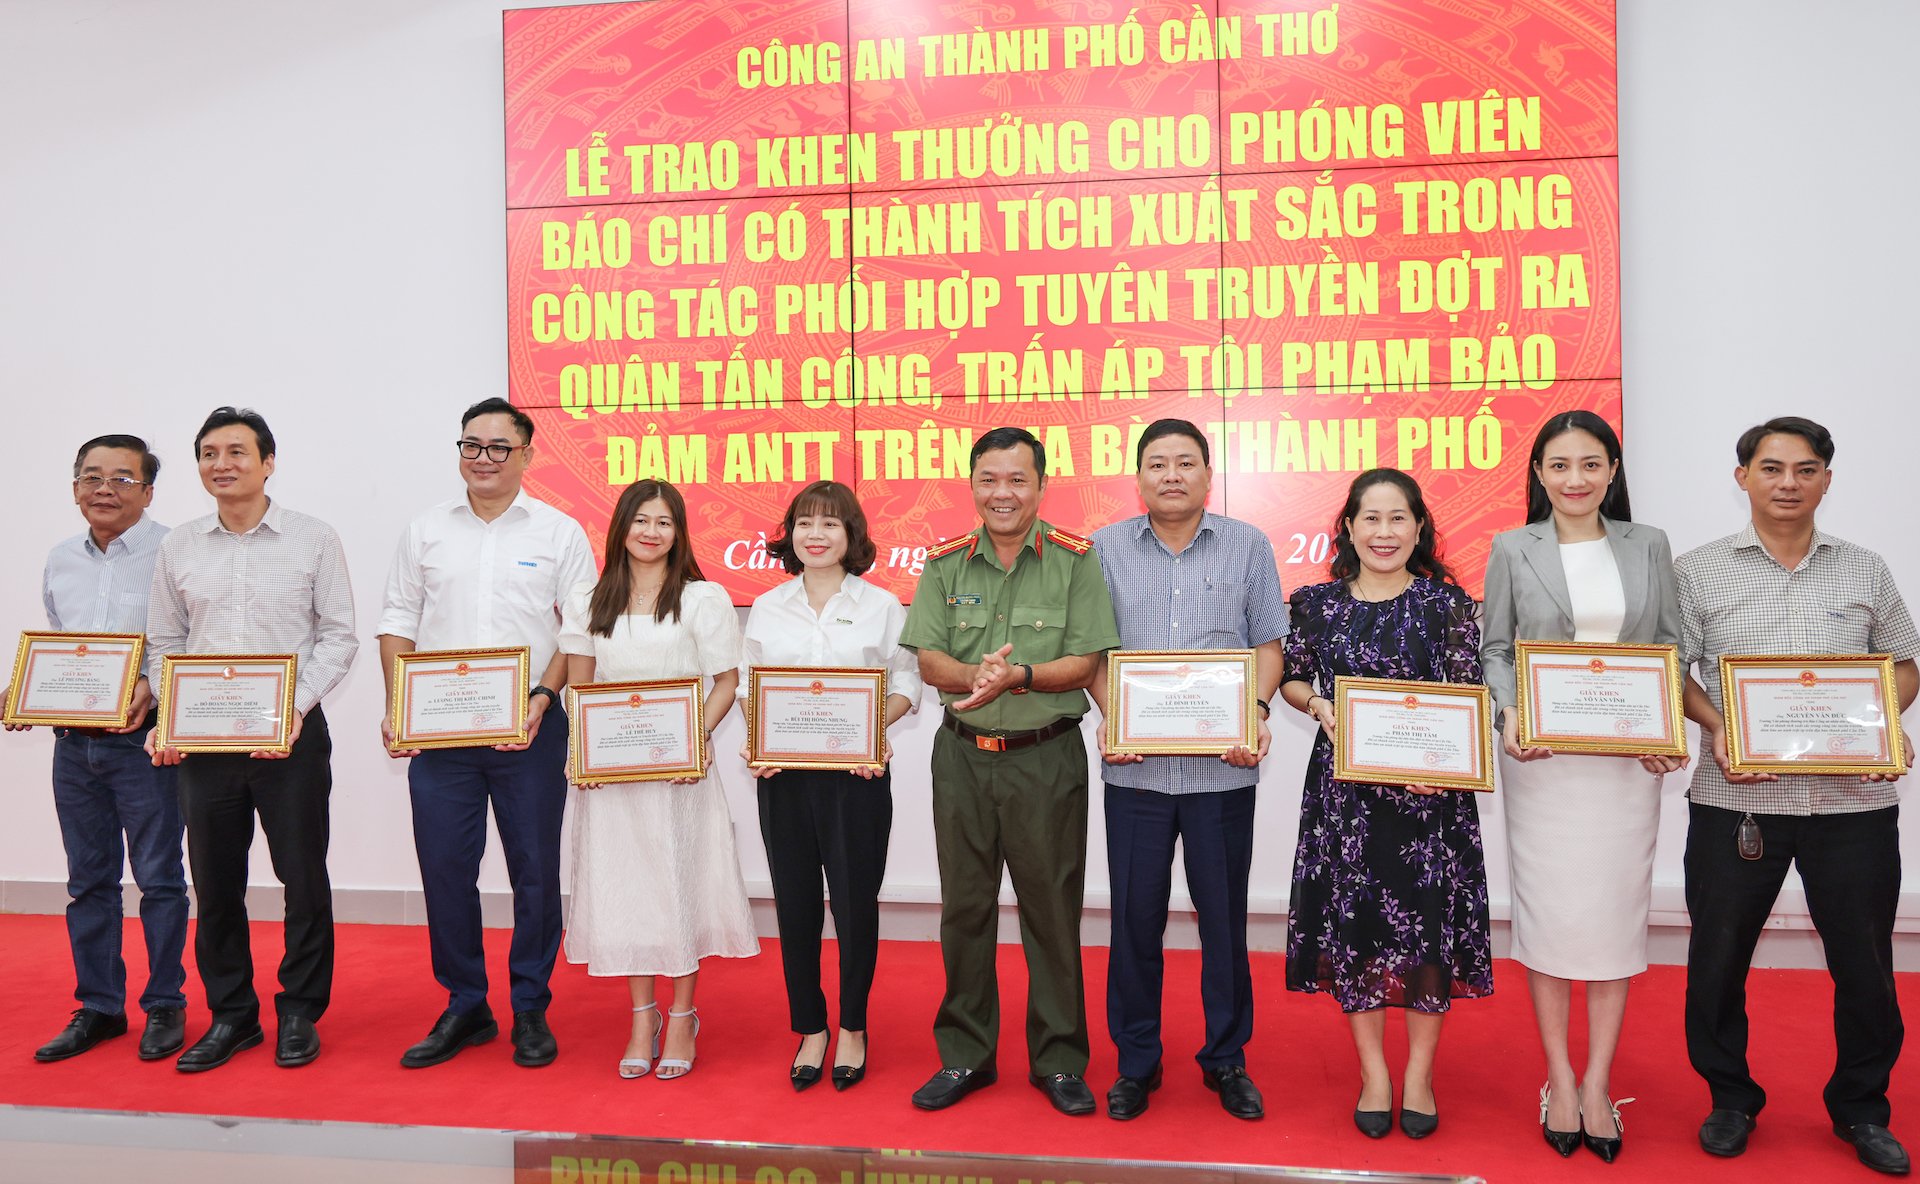 Thượng tá Nguyễn Hoàng Phúc - Trưởng Phòng An ninh chính trị nội bộ, Công an TP. Cần Thơ trao khen thưởng cho phóng viên các cơ quan báo chí.